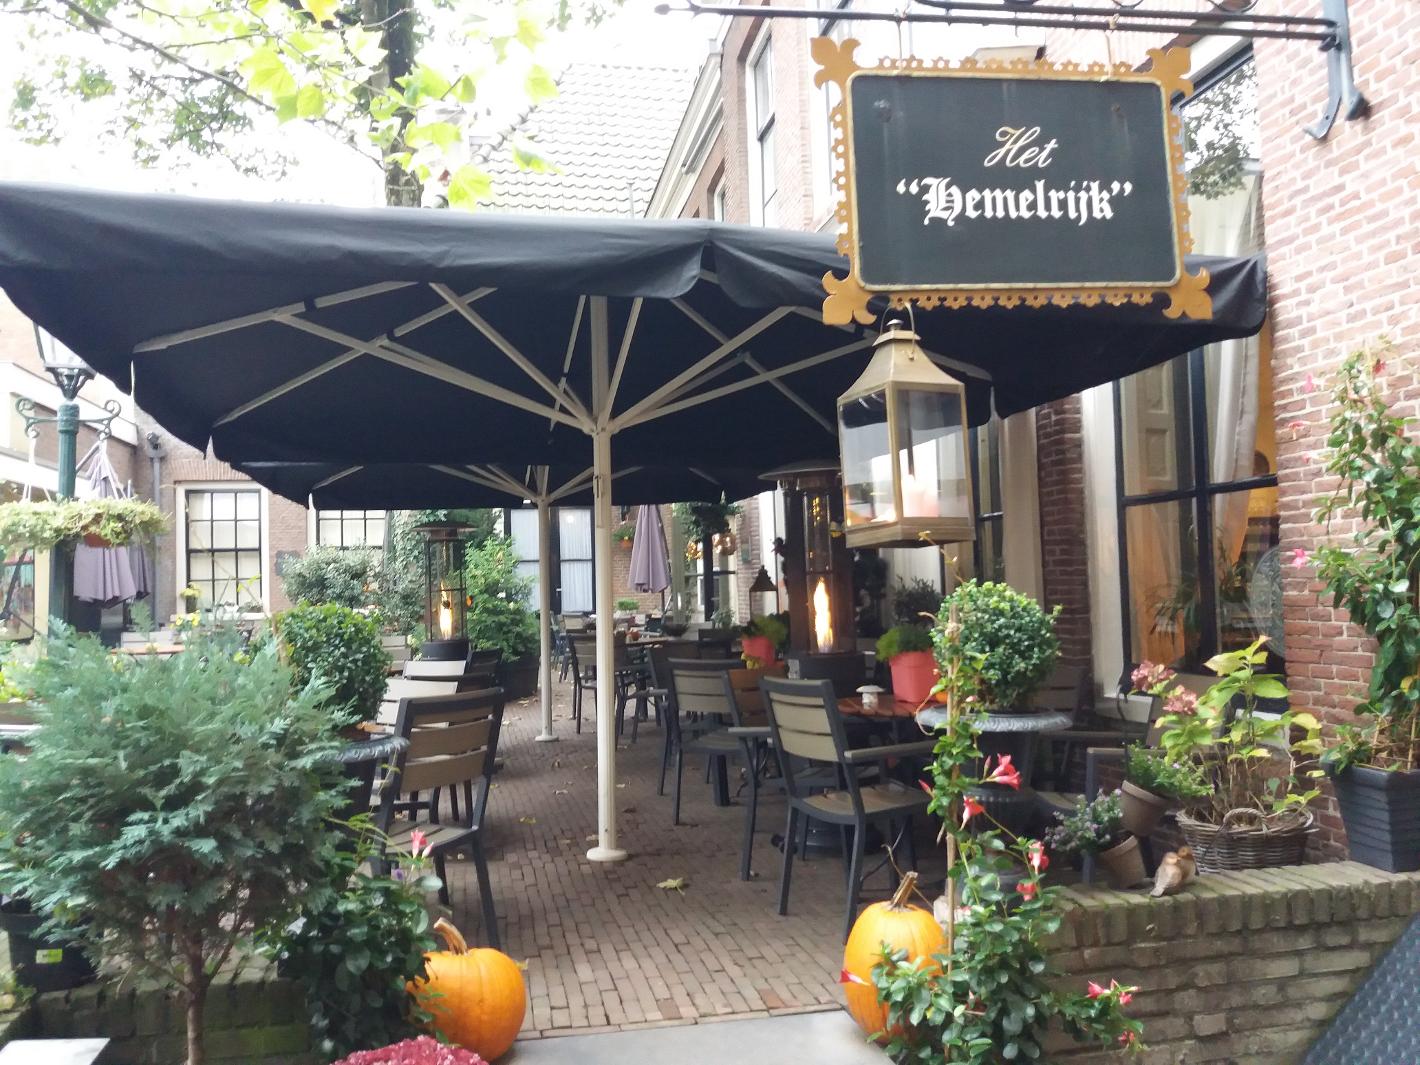 Photo Koffiehuis het Hemelrijk in Arnhem, Eat & drink, Drink coffee tea, Enjoy delicious lunch - #1